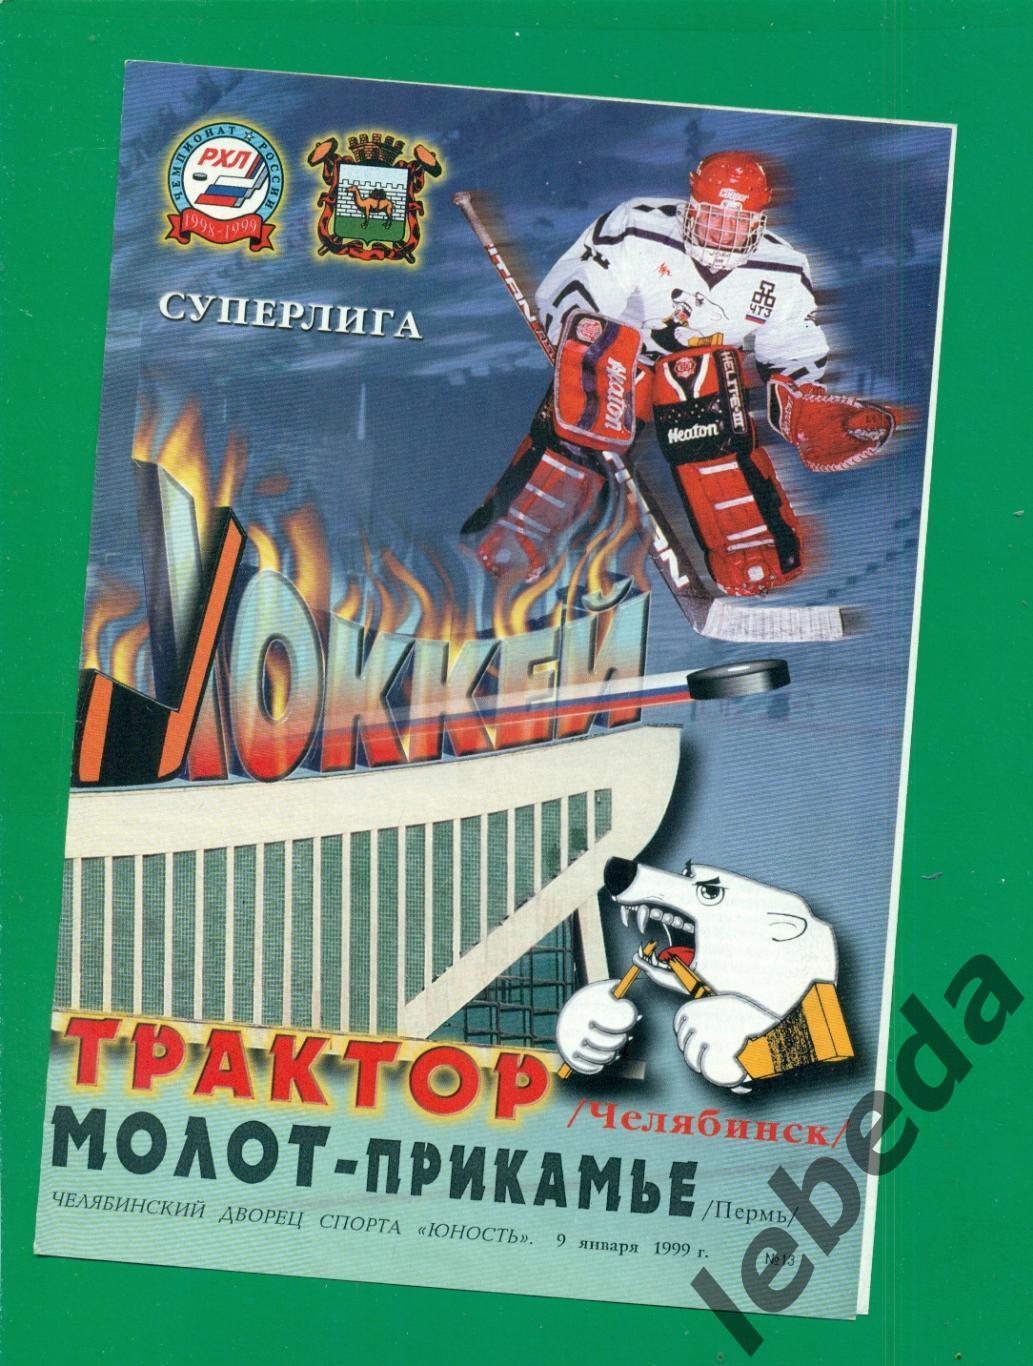 Трактор Челябинск - Молот Прикамье Пермь - 1998 / 1999 г. (09.01.1999.)